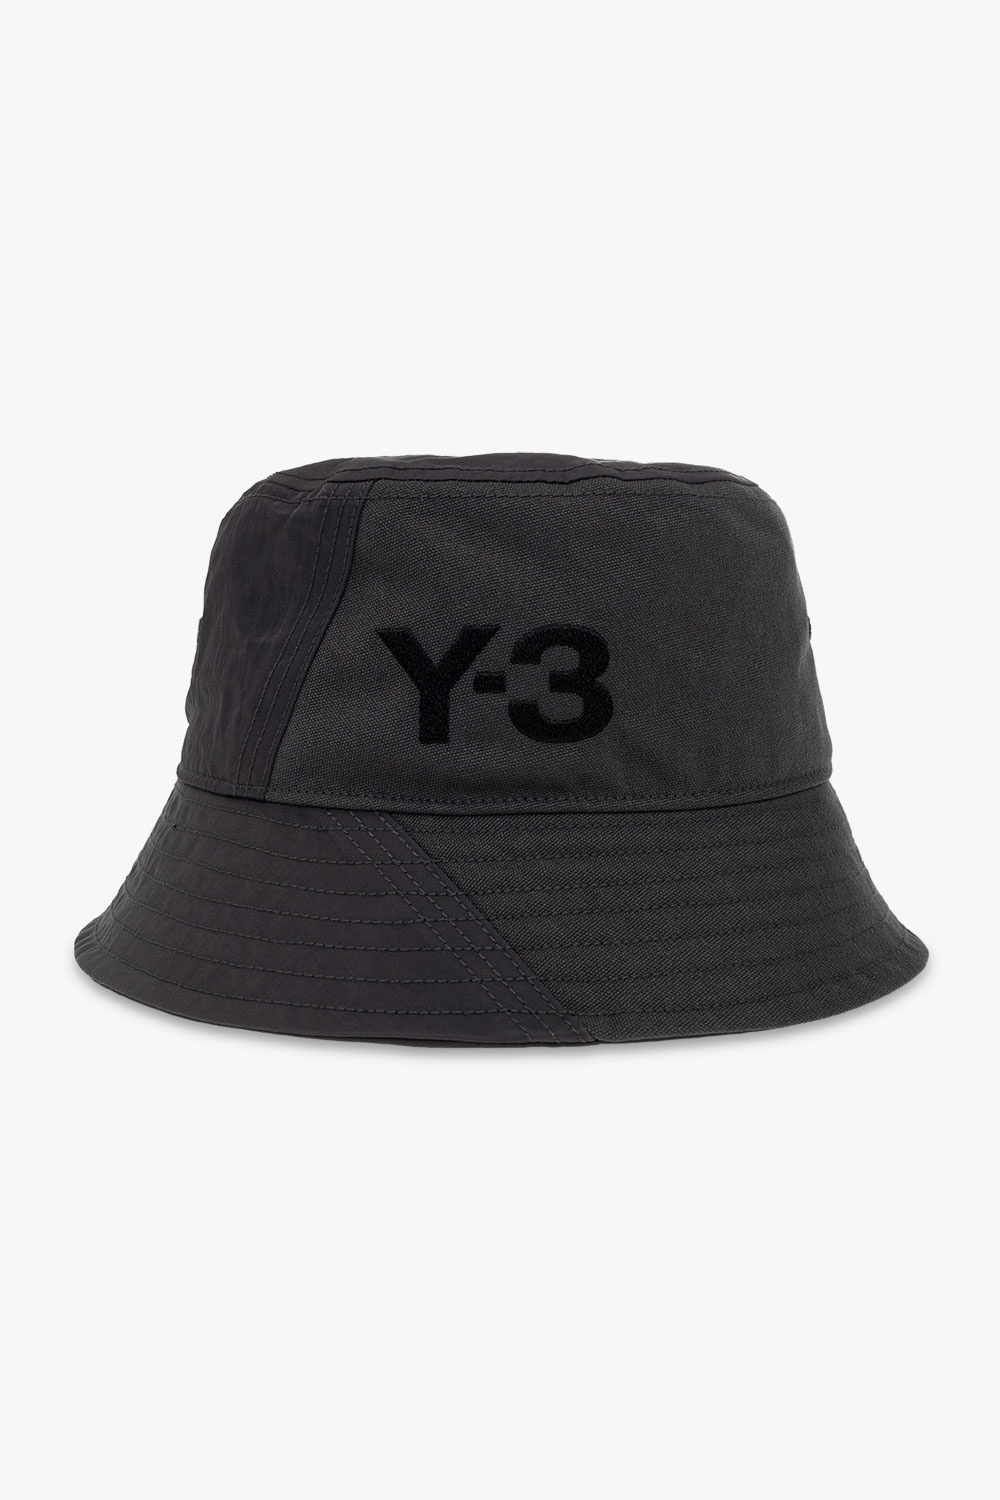 Y-3 Yohji Yamamoto hat 42 Sweatpants